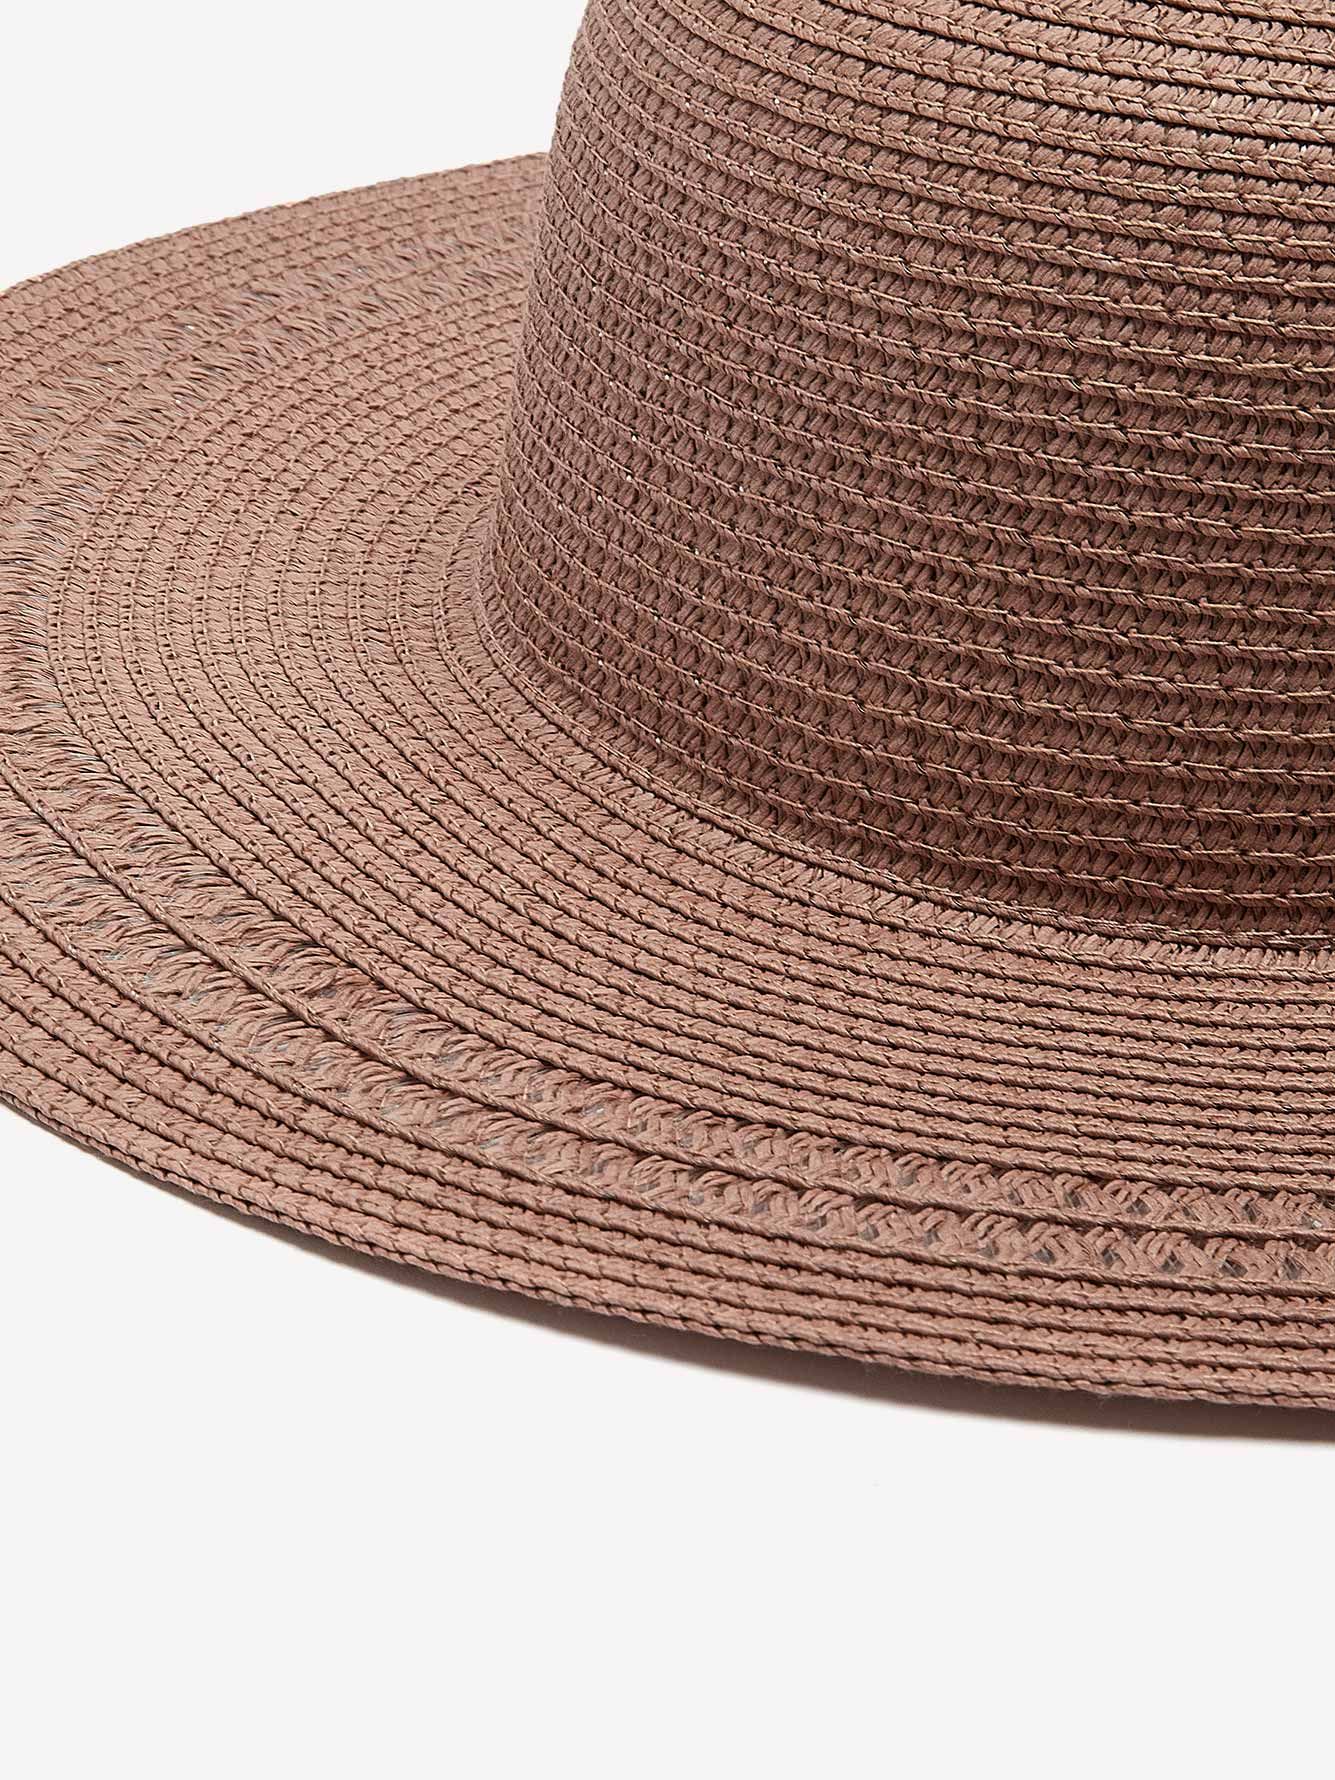 Pink Wide-Rim Straw Hat